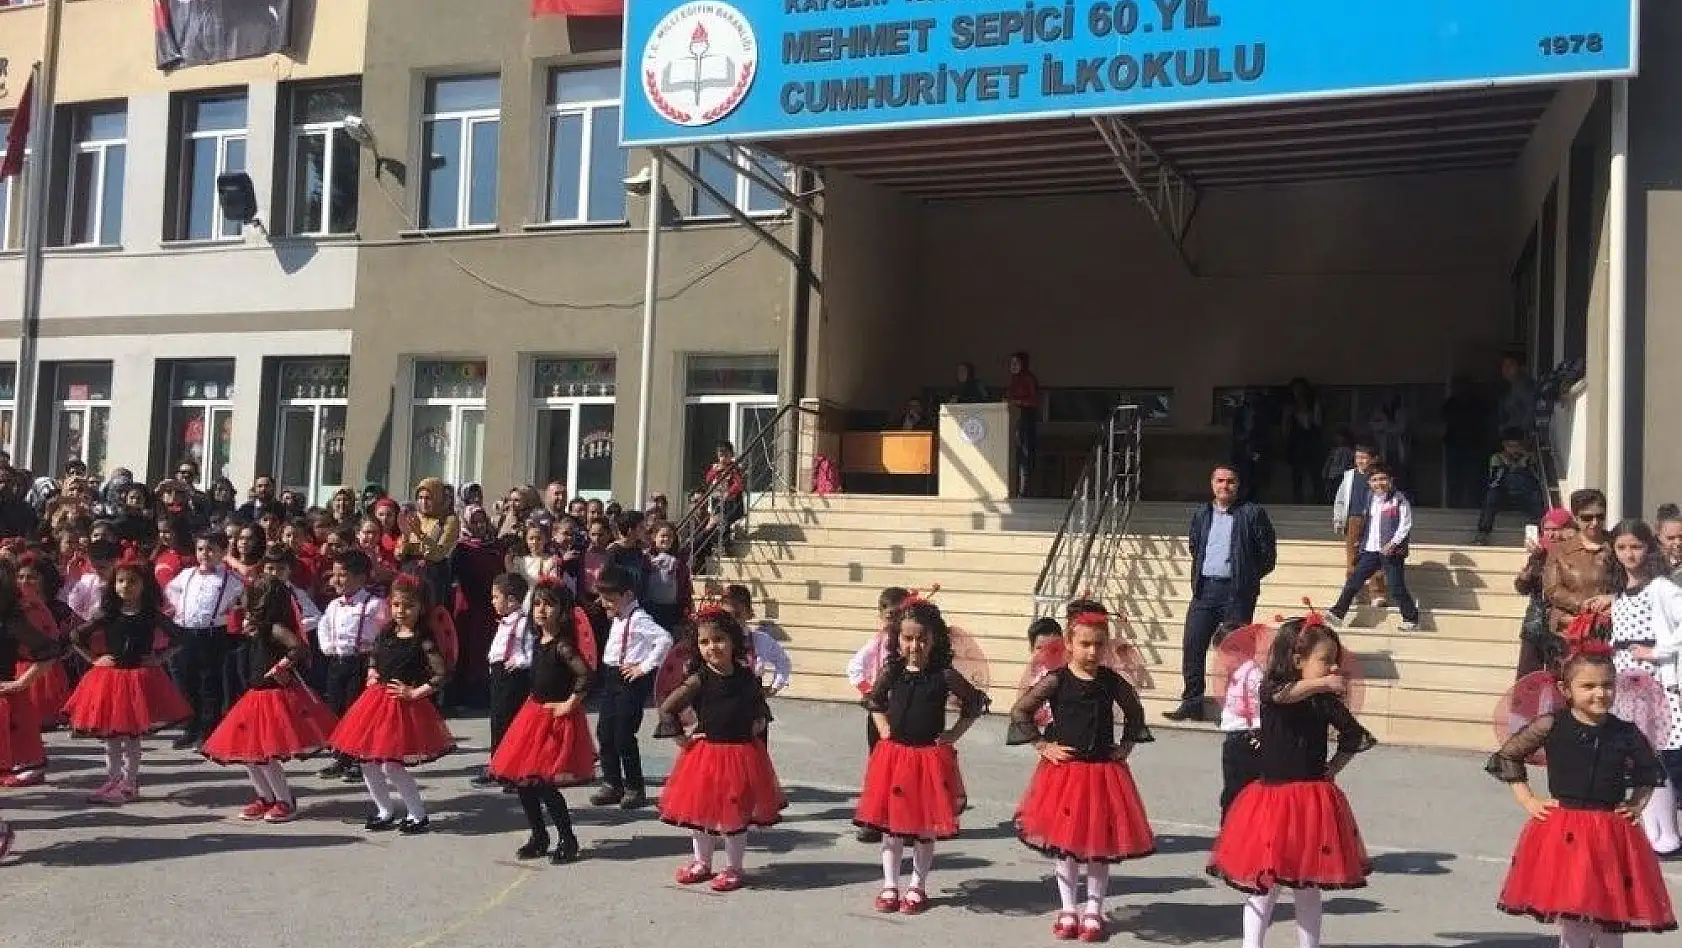 Mehmet Sepici 60. Yıl Cumhuriyet İlkokulu'nda 23 Nisan Coşkusu